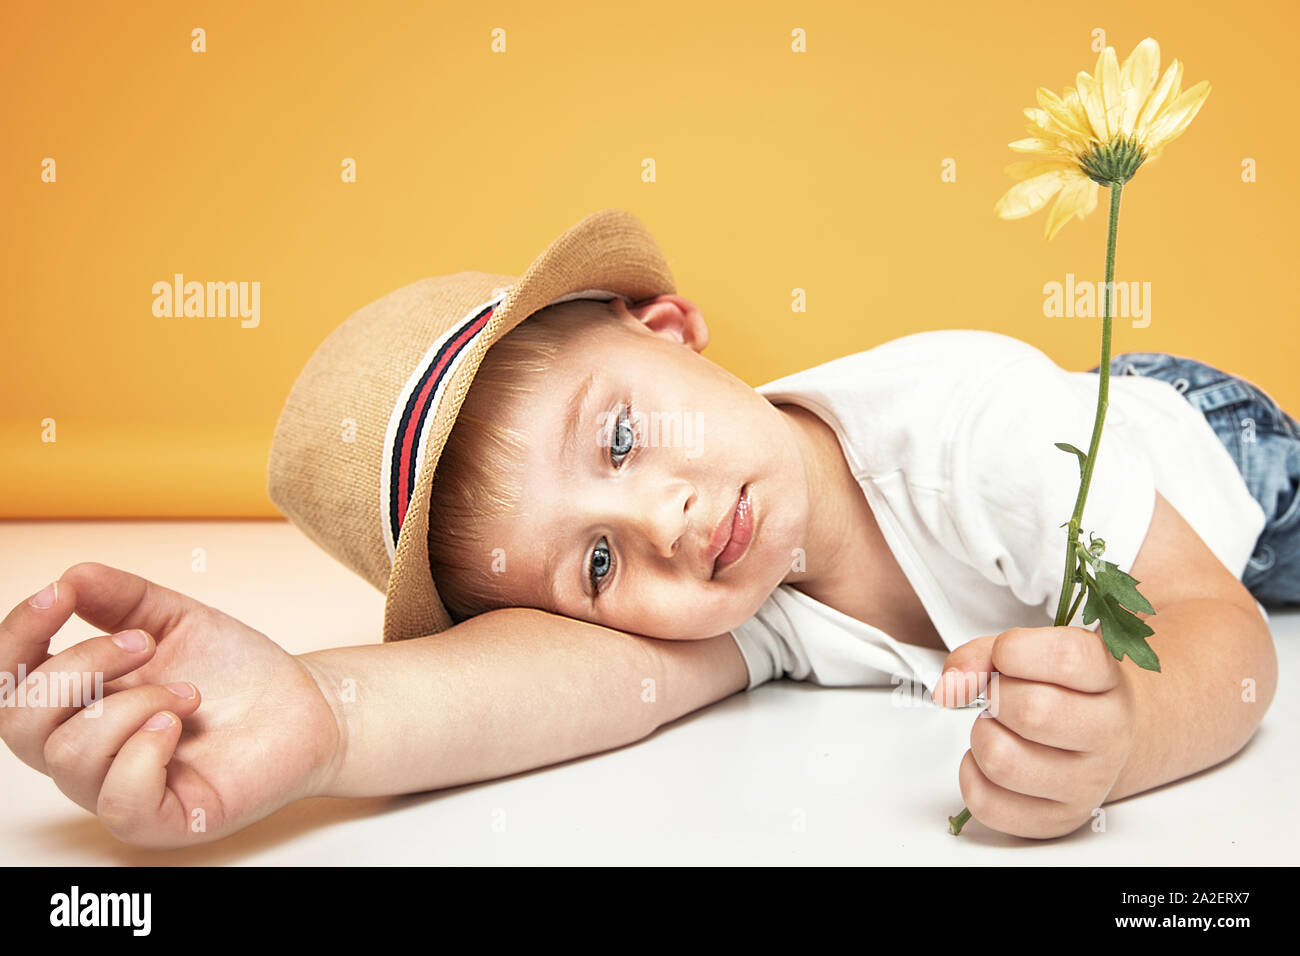 Retrato de un confidente poco feliz kid , posando en el sombrero de verano, la celebración de flor amarilla en la mano. Las emociones humanas, el concepto de expresión. Foto de stock